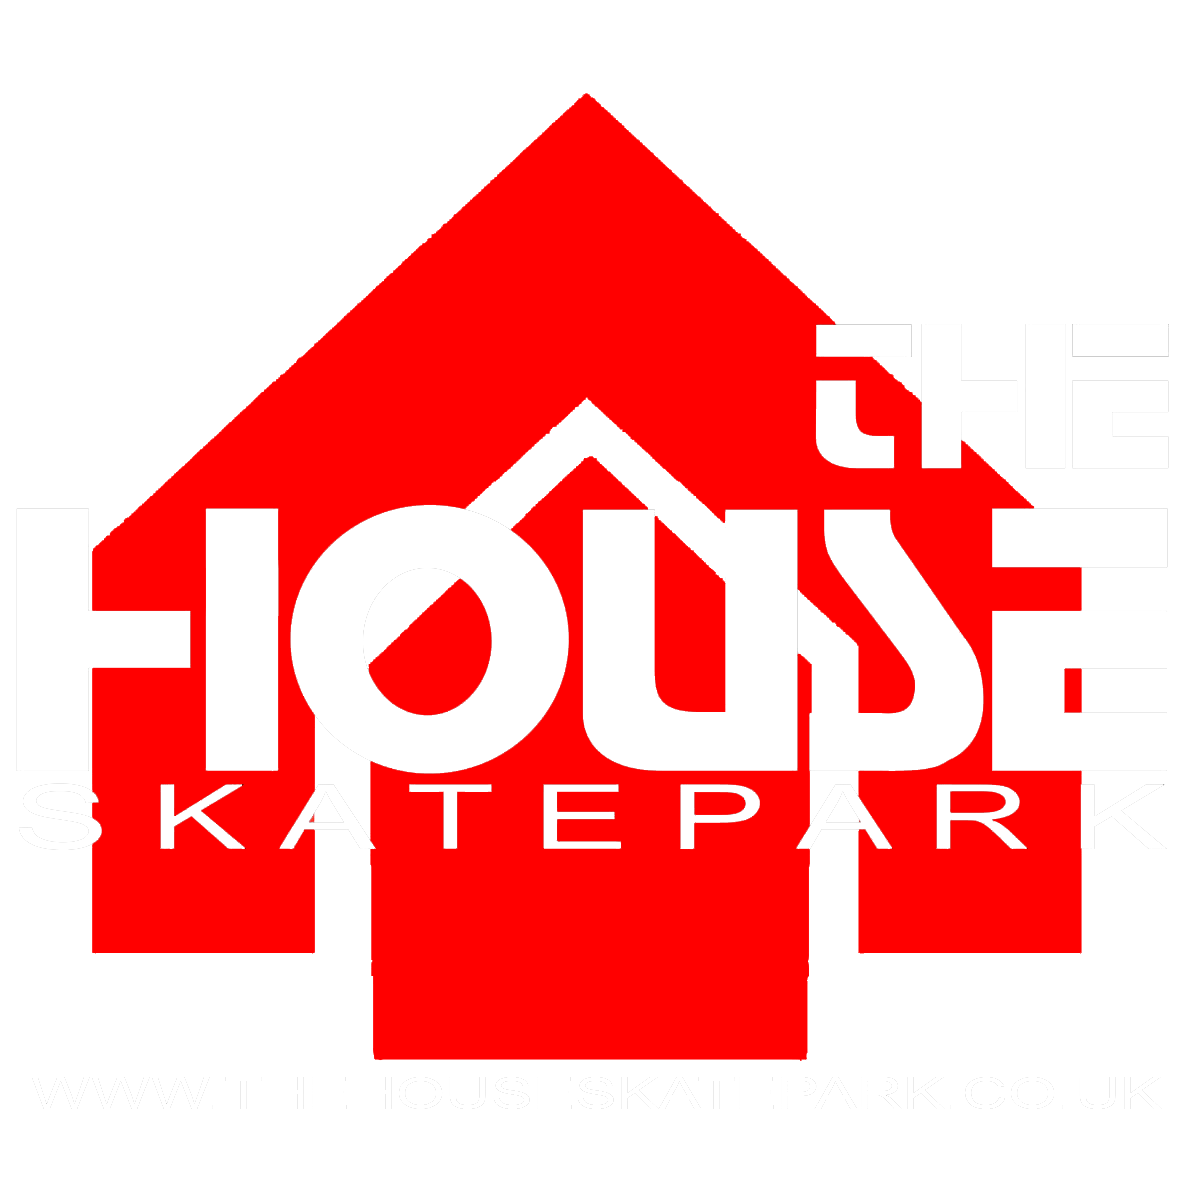 The House Skatepark